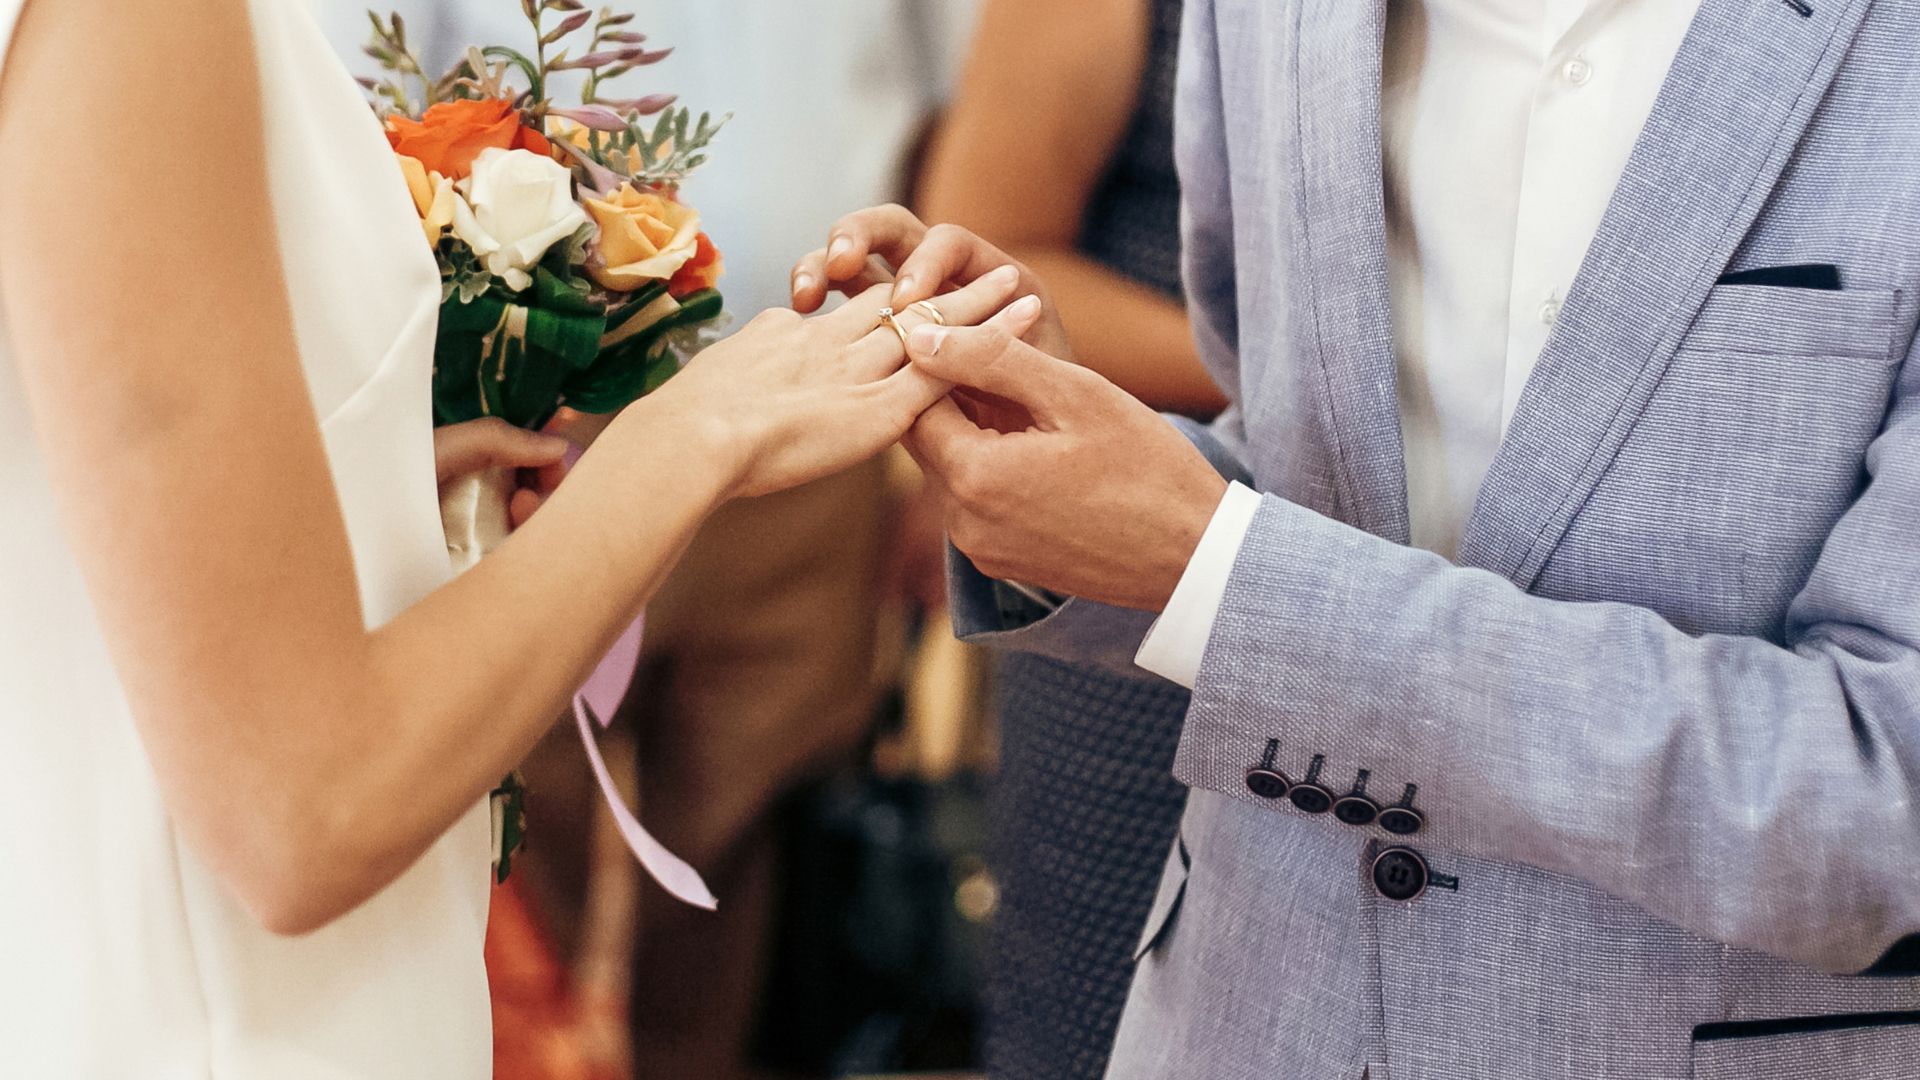 Ślub ekumeniczny – pan młody zakłada pannie młodej obrączkę na palec w trakcie ceremonii.